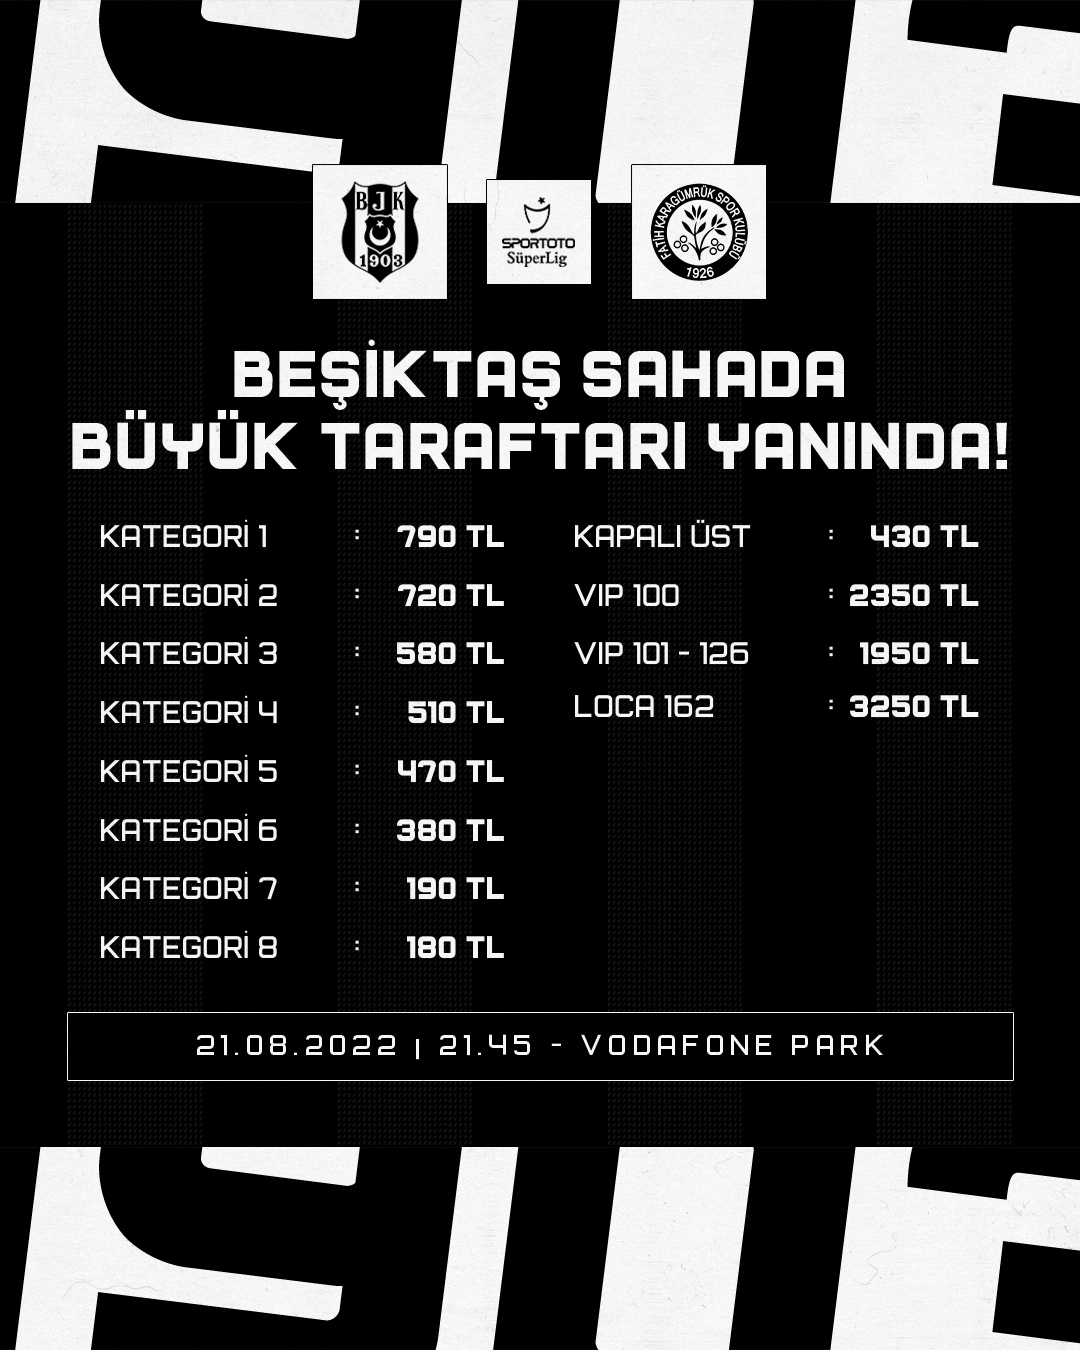 Geçen sene Beşiktaş taraftarı oyunu döndürmüştü